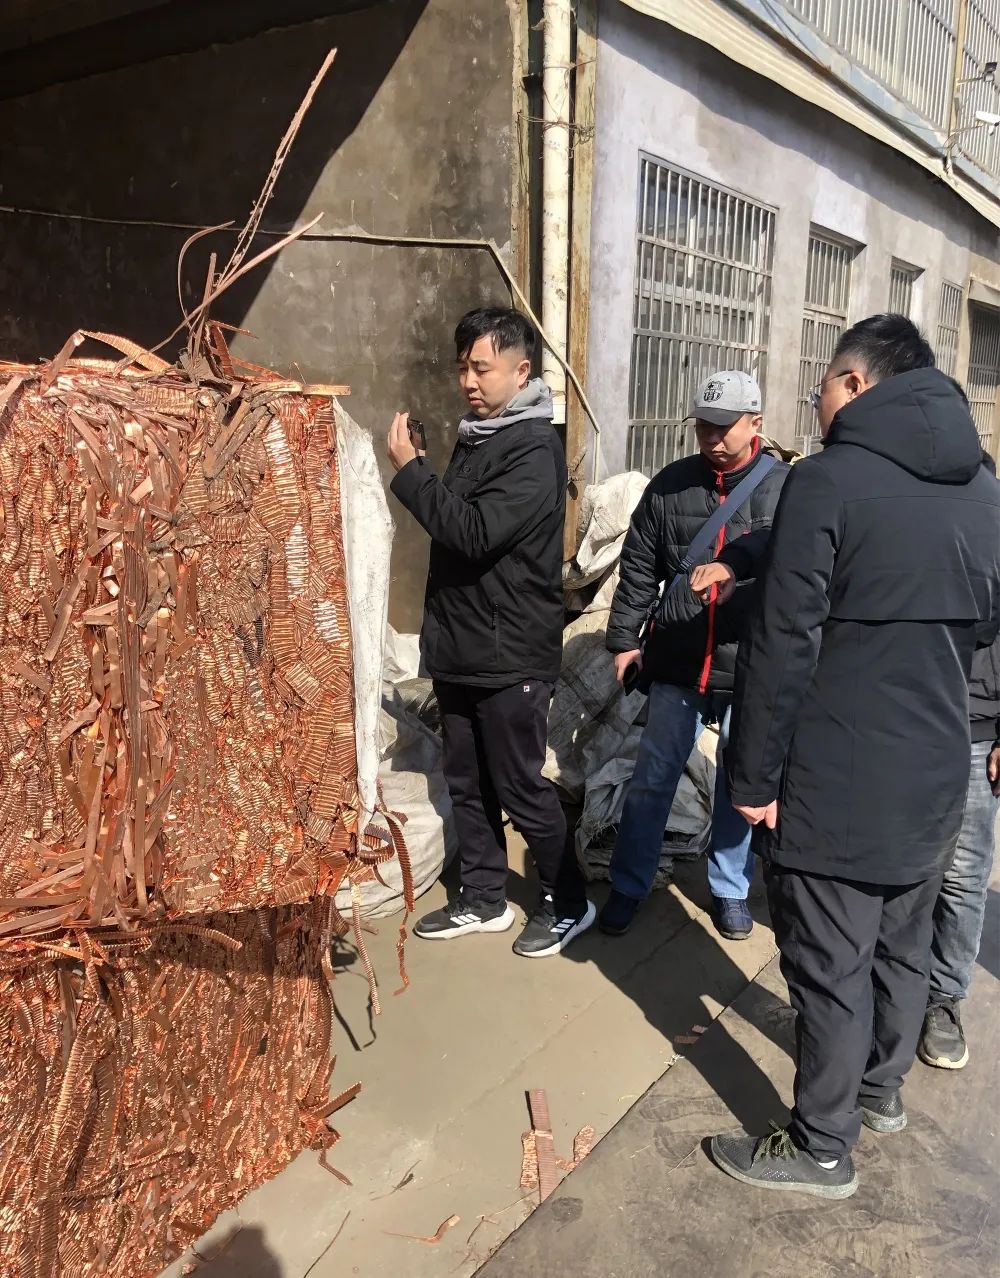 中國有色金屬工業協會再生金屬分會赴山東臨沂調研考察原料保障及危廢處置利用情況